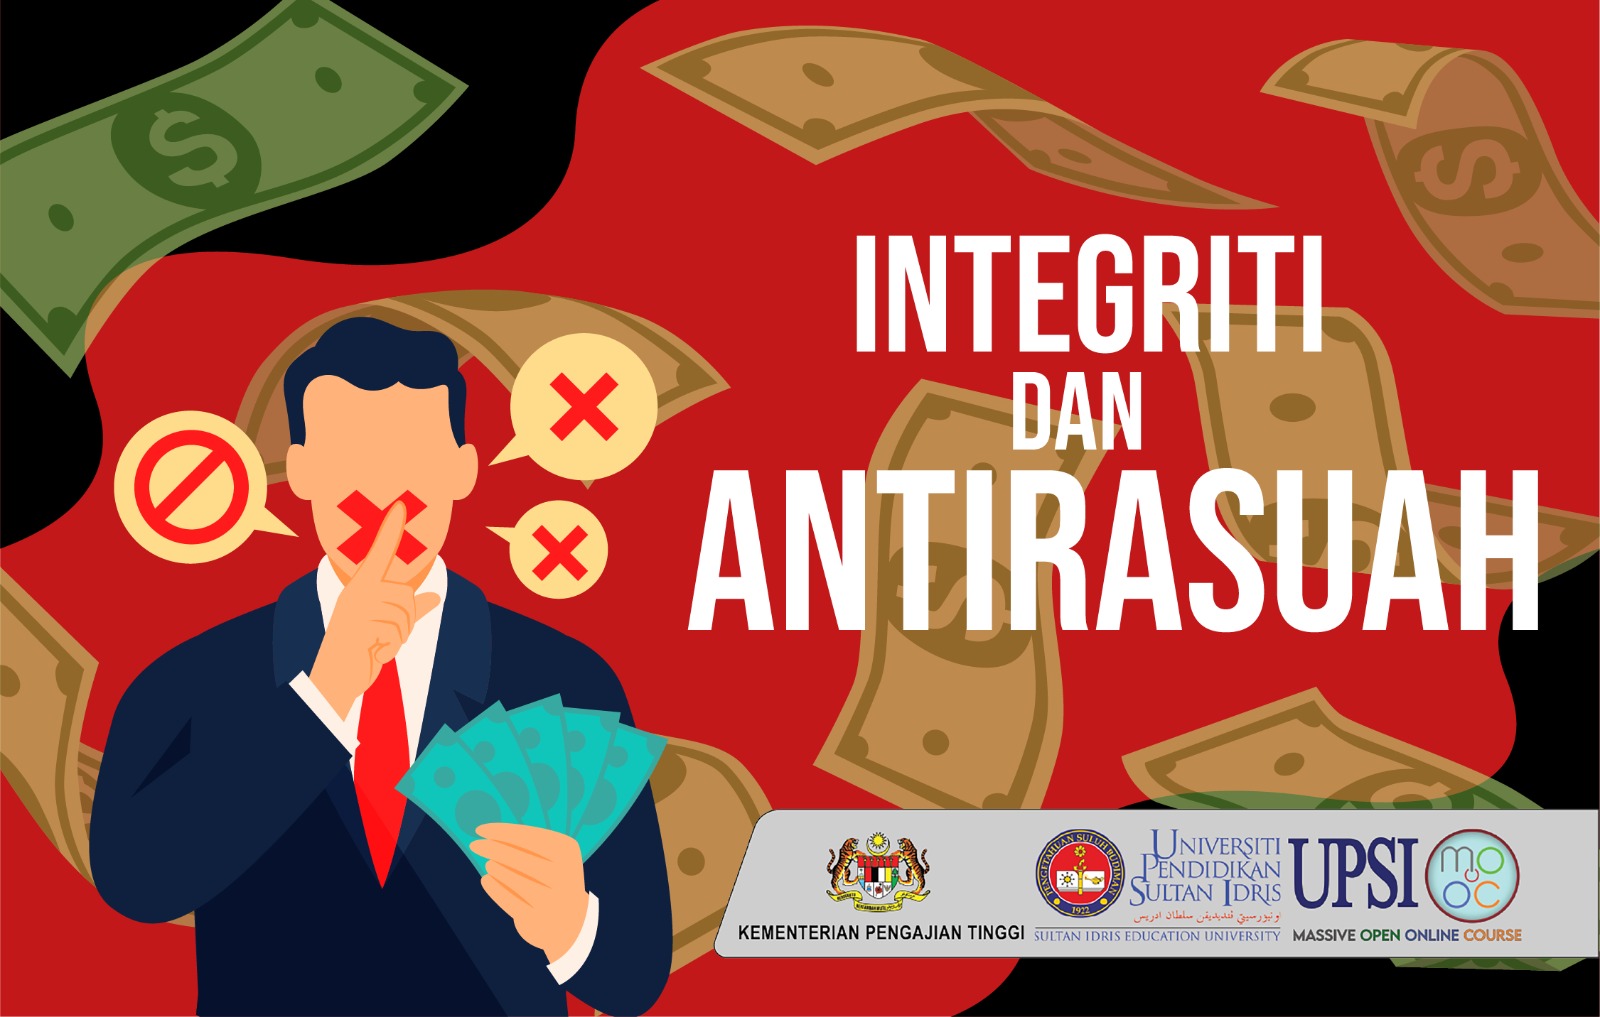 Integriti dan Antirasuah